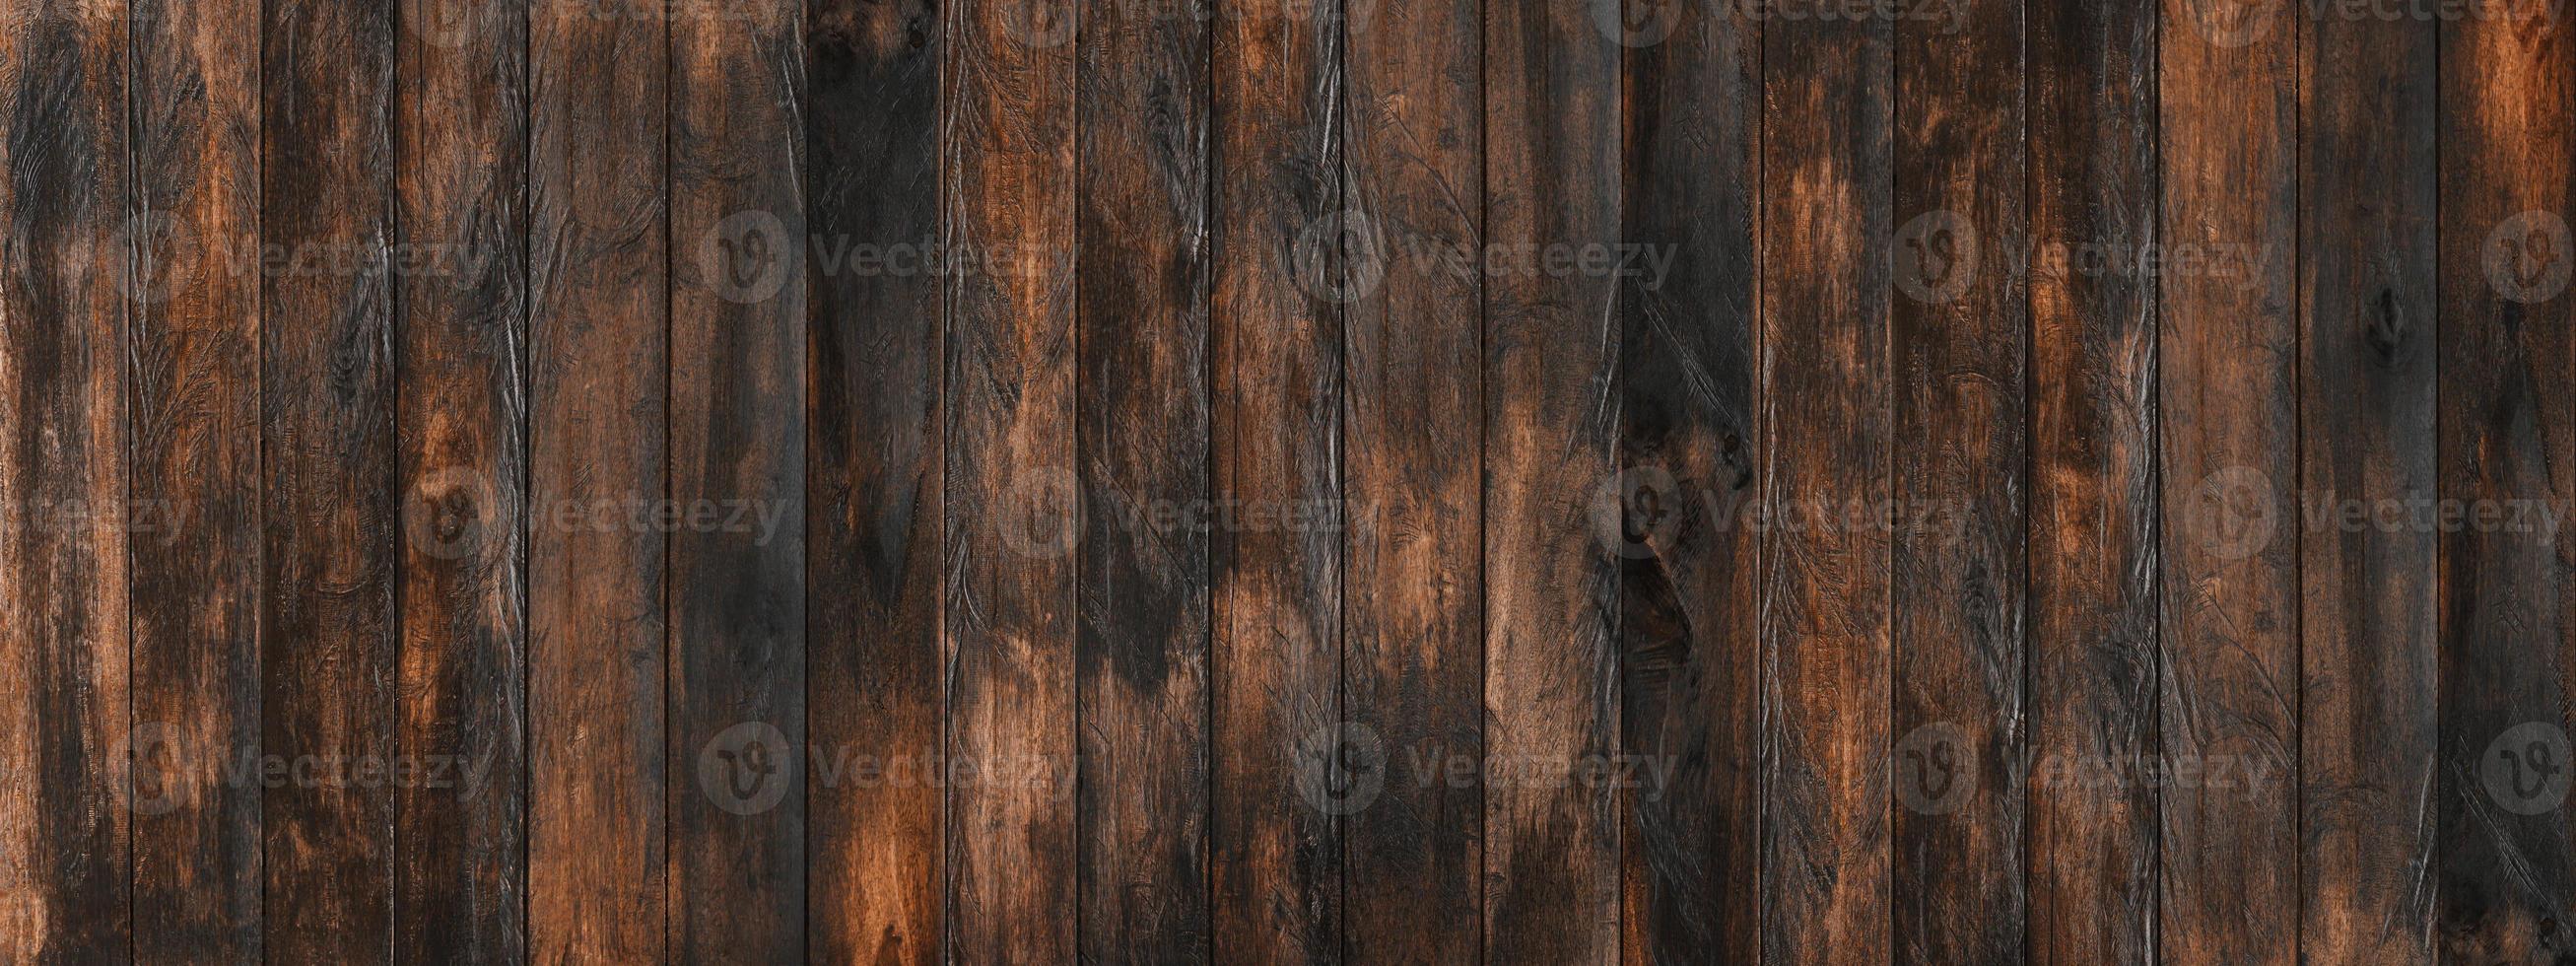 textura de madera vieja para el fondo del patrón. telón de fondo de diseño de casa, tienda y cafetería. foto